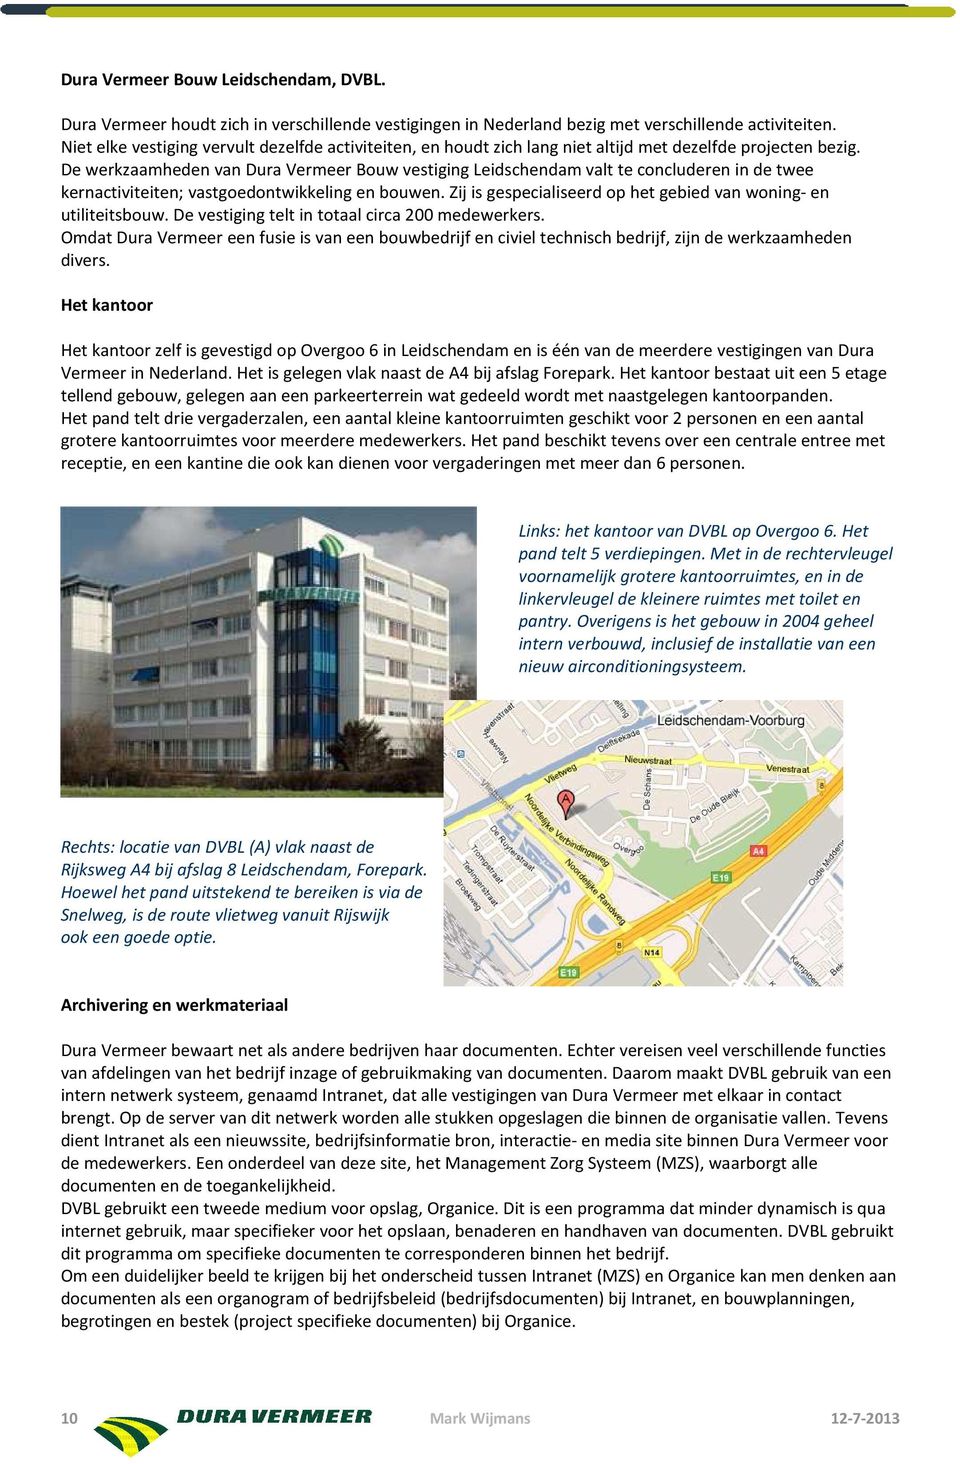 De werkzaamheden van Dura Vermeer Bouw vestiging Leidschendam valt te concluderen in de twee kernactiviteiten; vastgoedontwikkeling en bouwen.